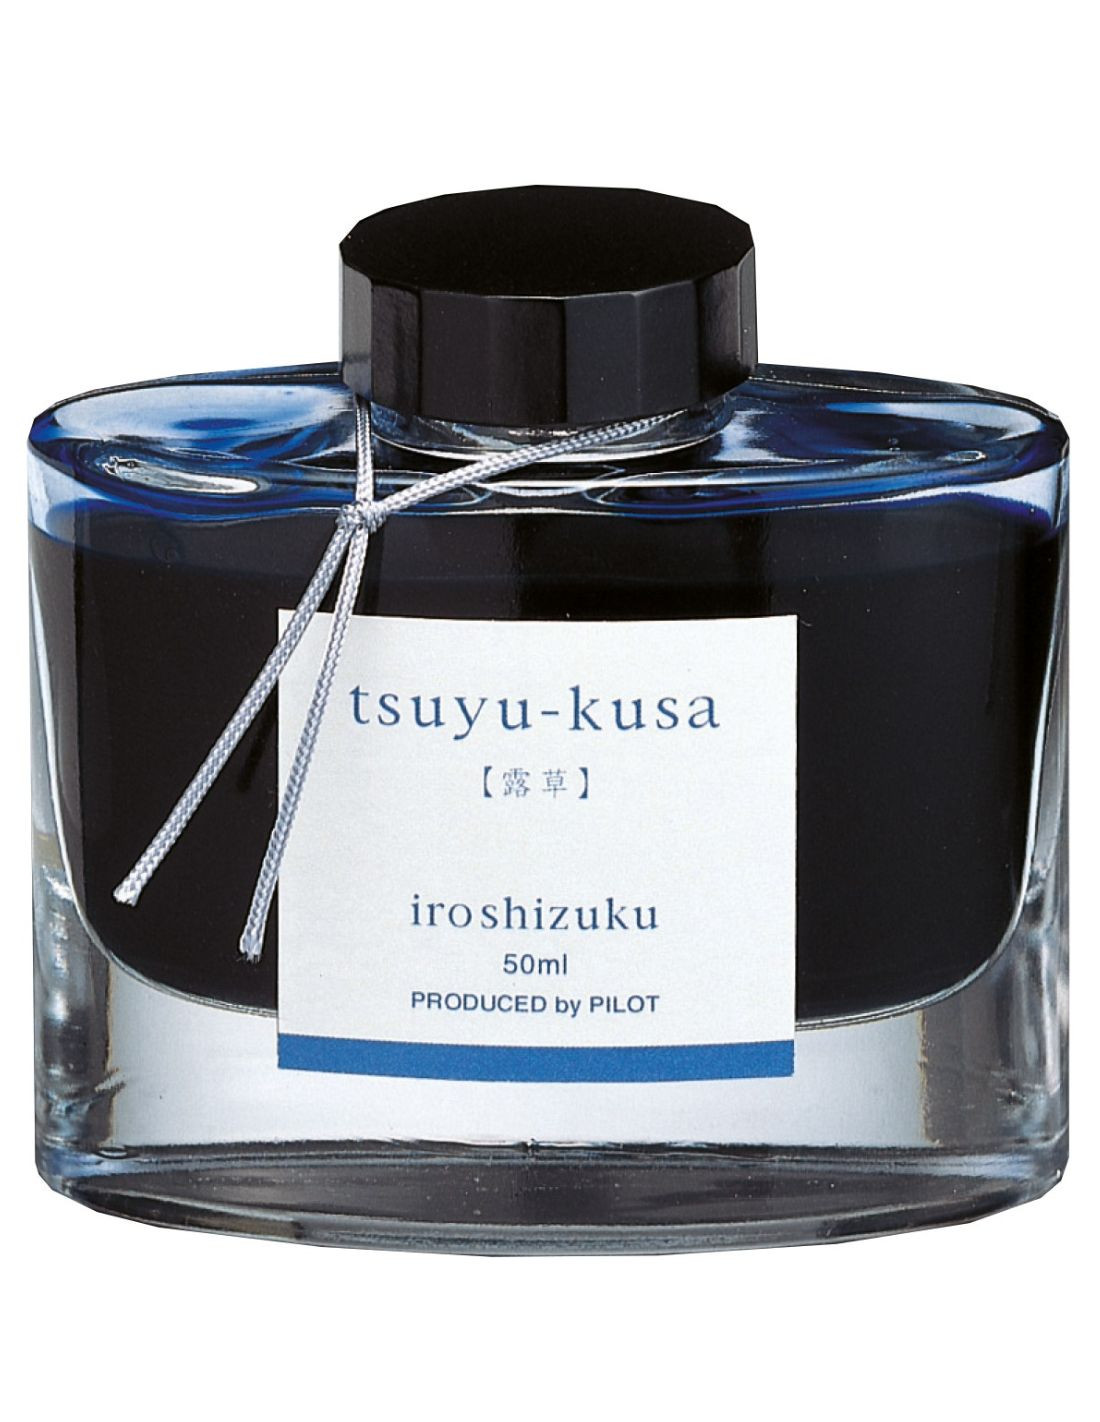 Iroshizuku Ink - Bottle 50ml - Tsuyu-kusa - Pilot